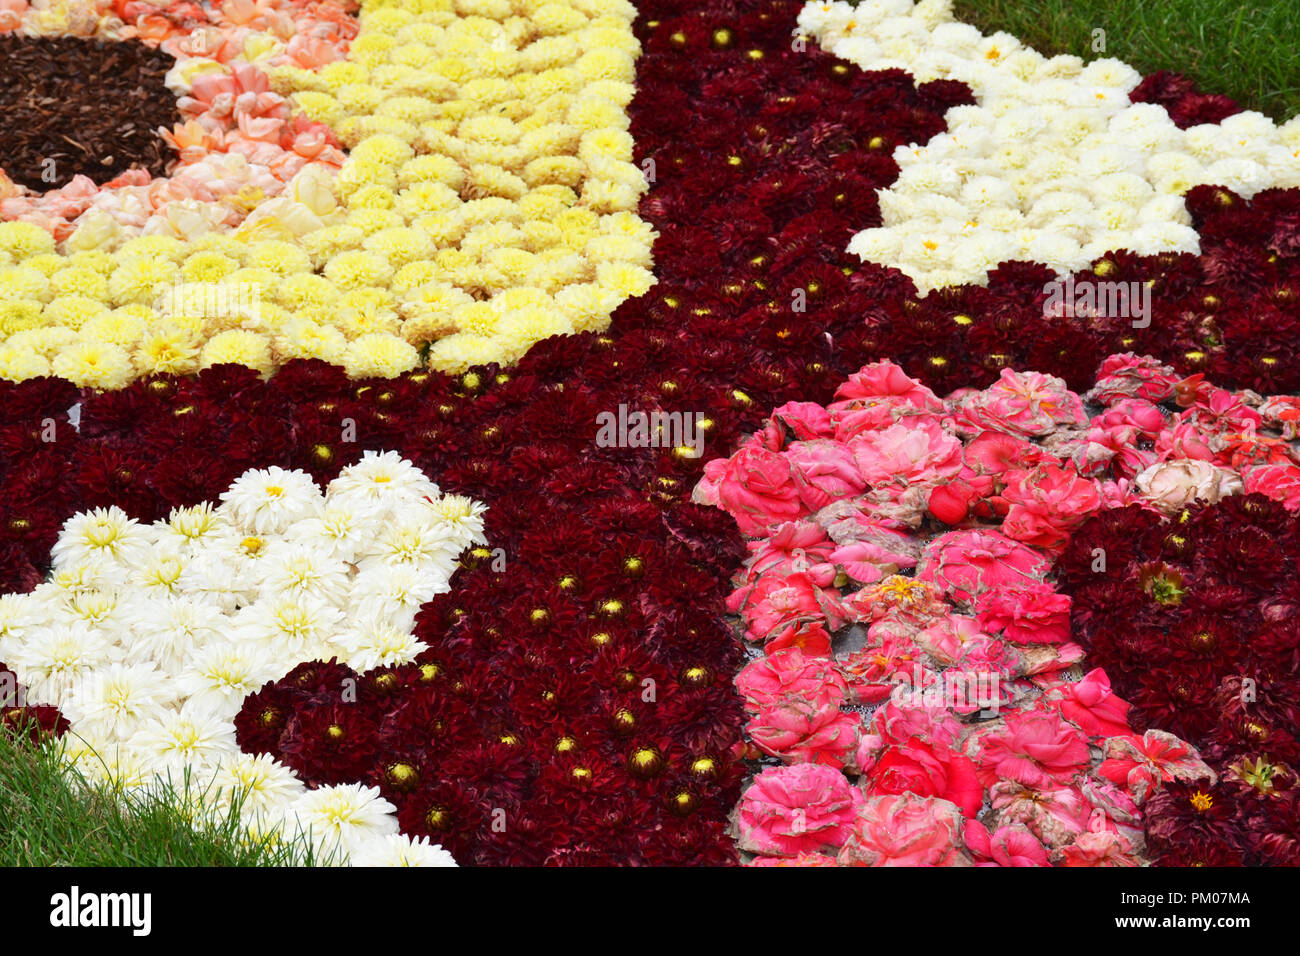 Bruxelles Grand Place tapis de fleurs à base de bulbes à fleurs, Belgique Banque D'Images